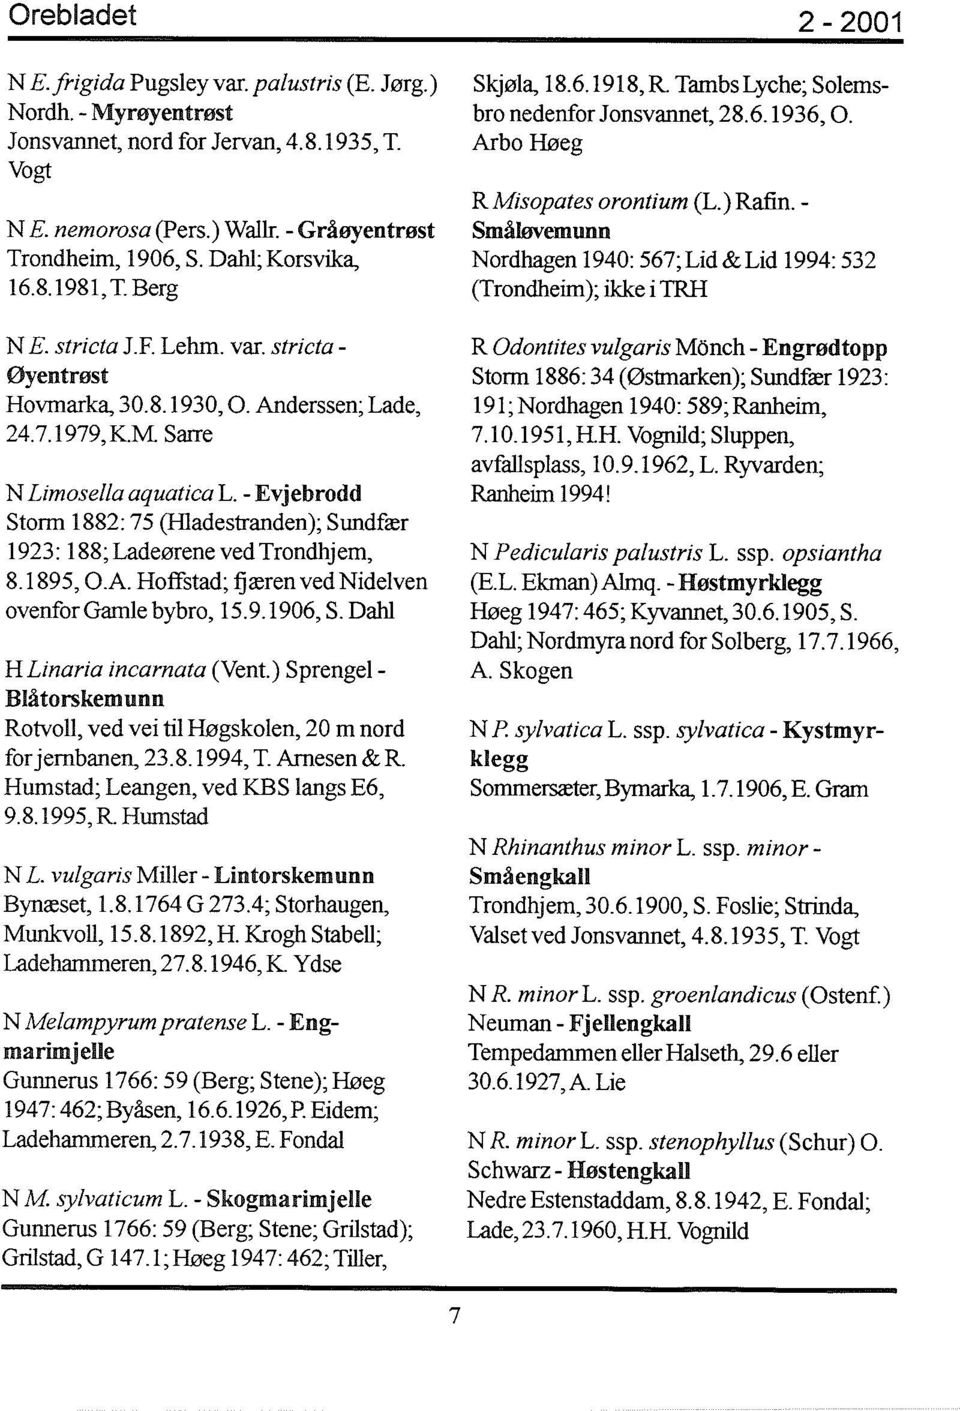 - Evjebrodd Storm 1882: 75 (Hladestranden); Sundfær 1923: 188; Ladeørene ved Trondhjem, 8.1895, O.A. Hoffstad; fjæren ved Nidelven ovenfor Gamle bybro, 15.9.1906, S. Dahl HLinaria incarnata (Vent.